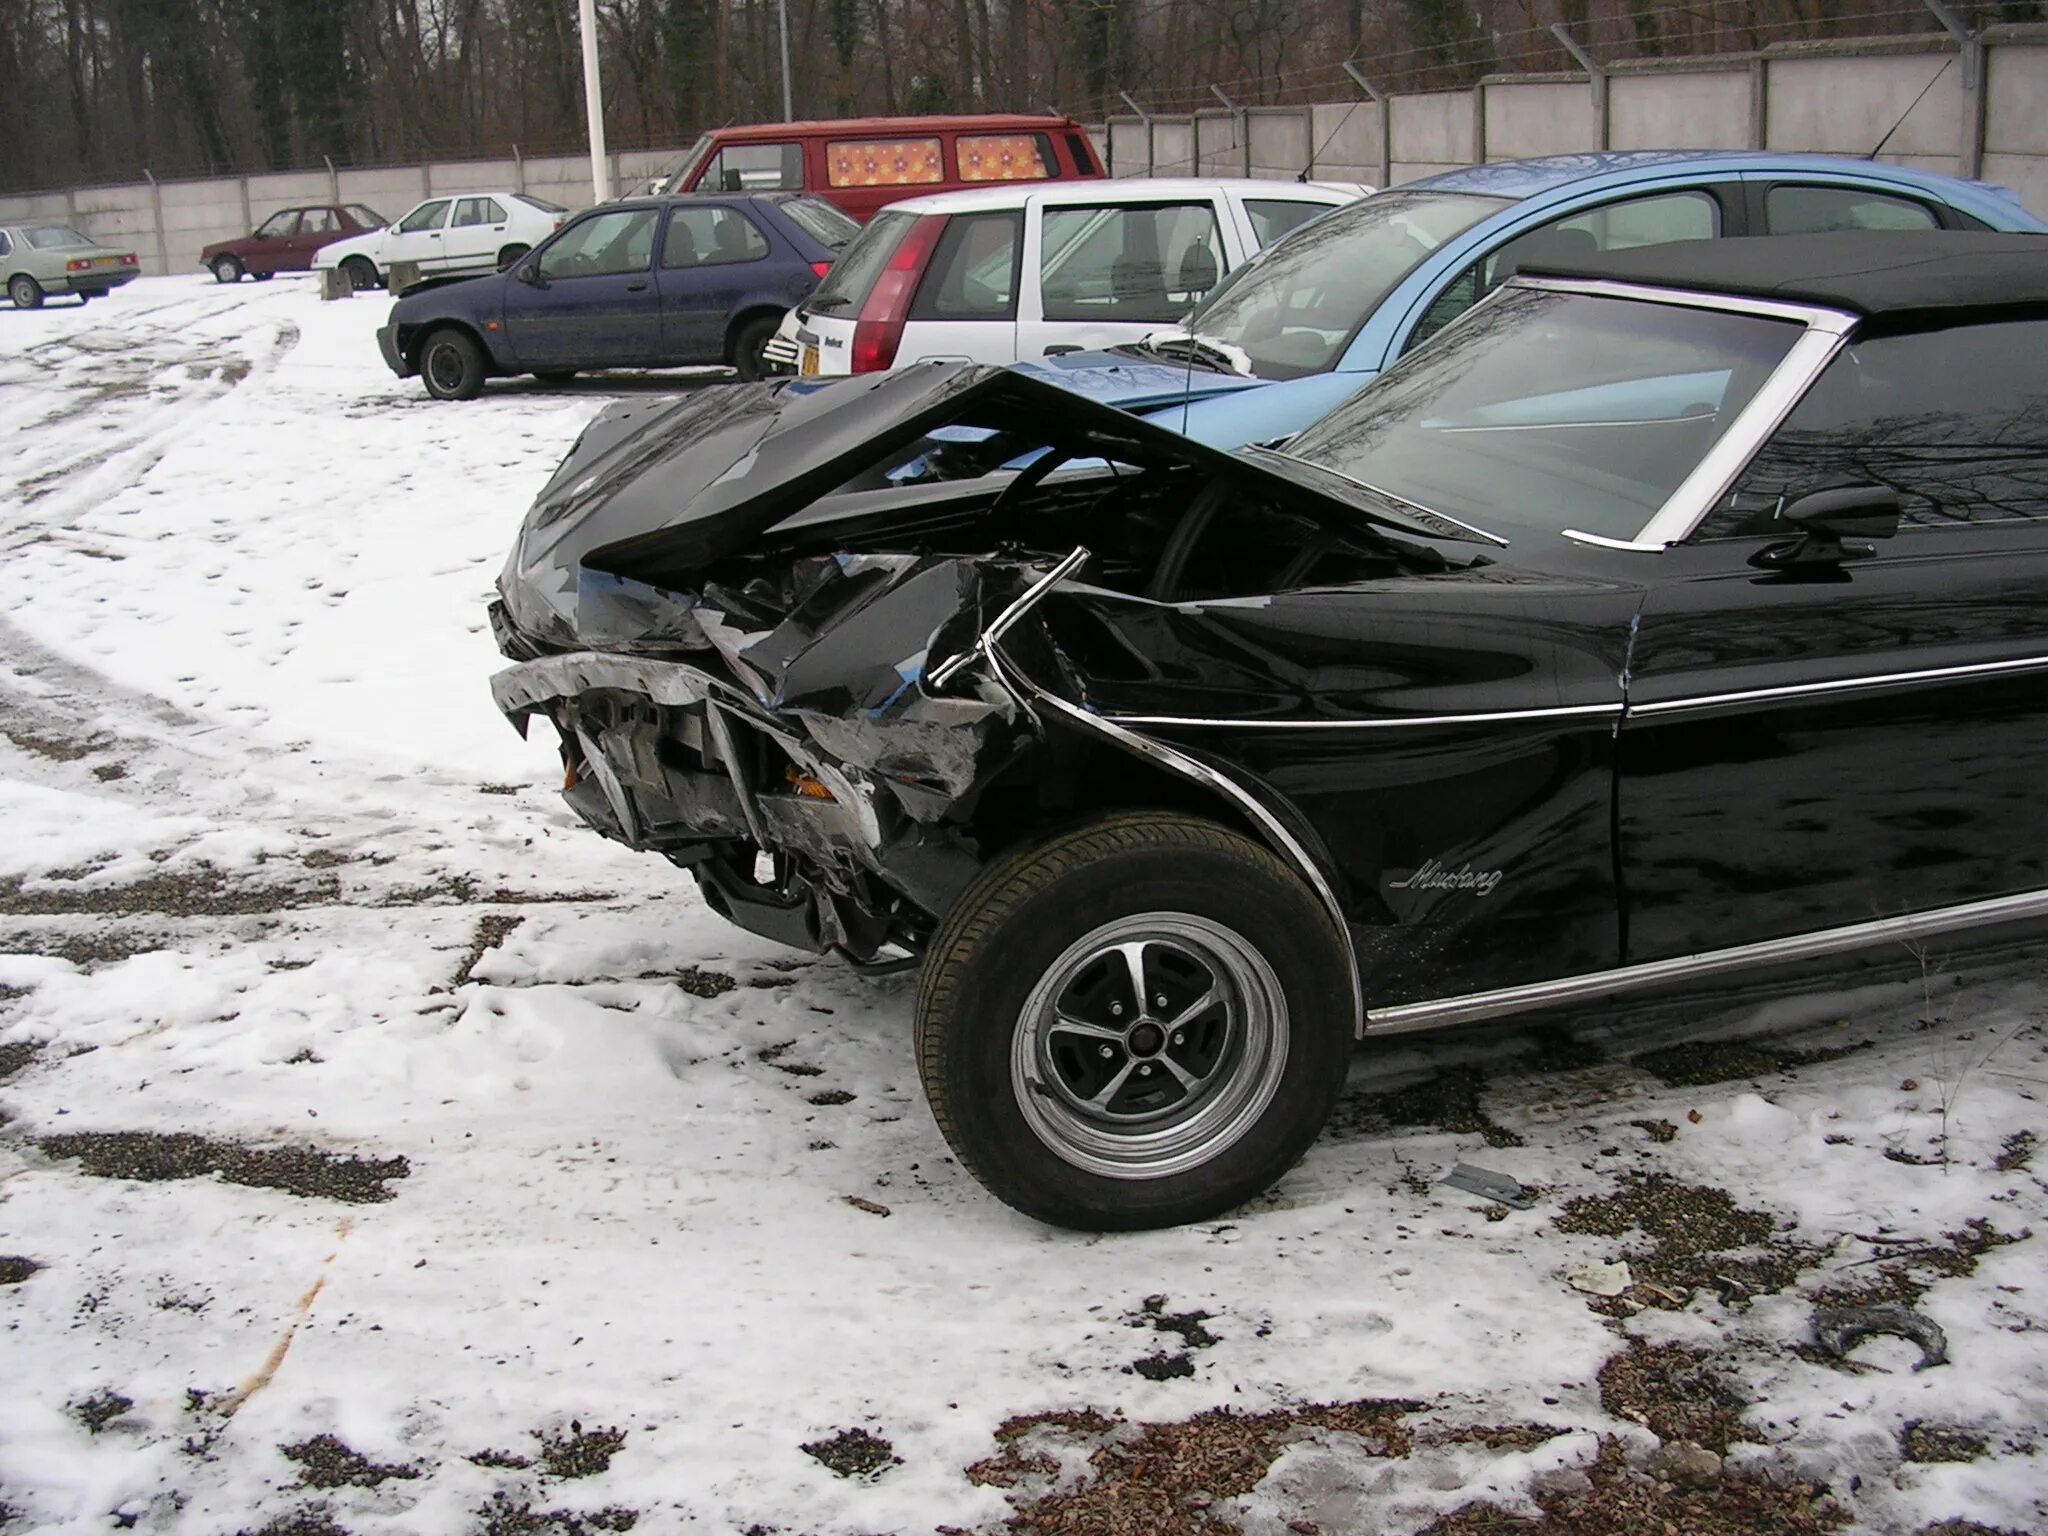 Форд Мустанг 2005 разбитый. Разбитый Форд Мустанг 1969. Разбитый Форд Мустанг.